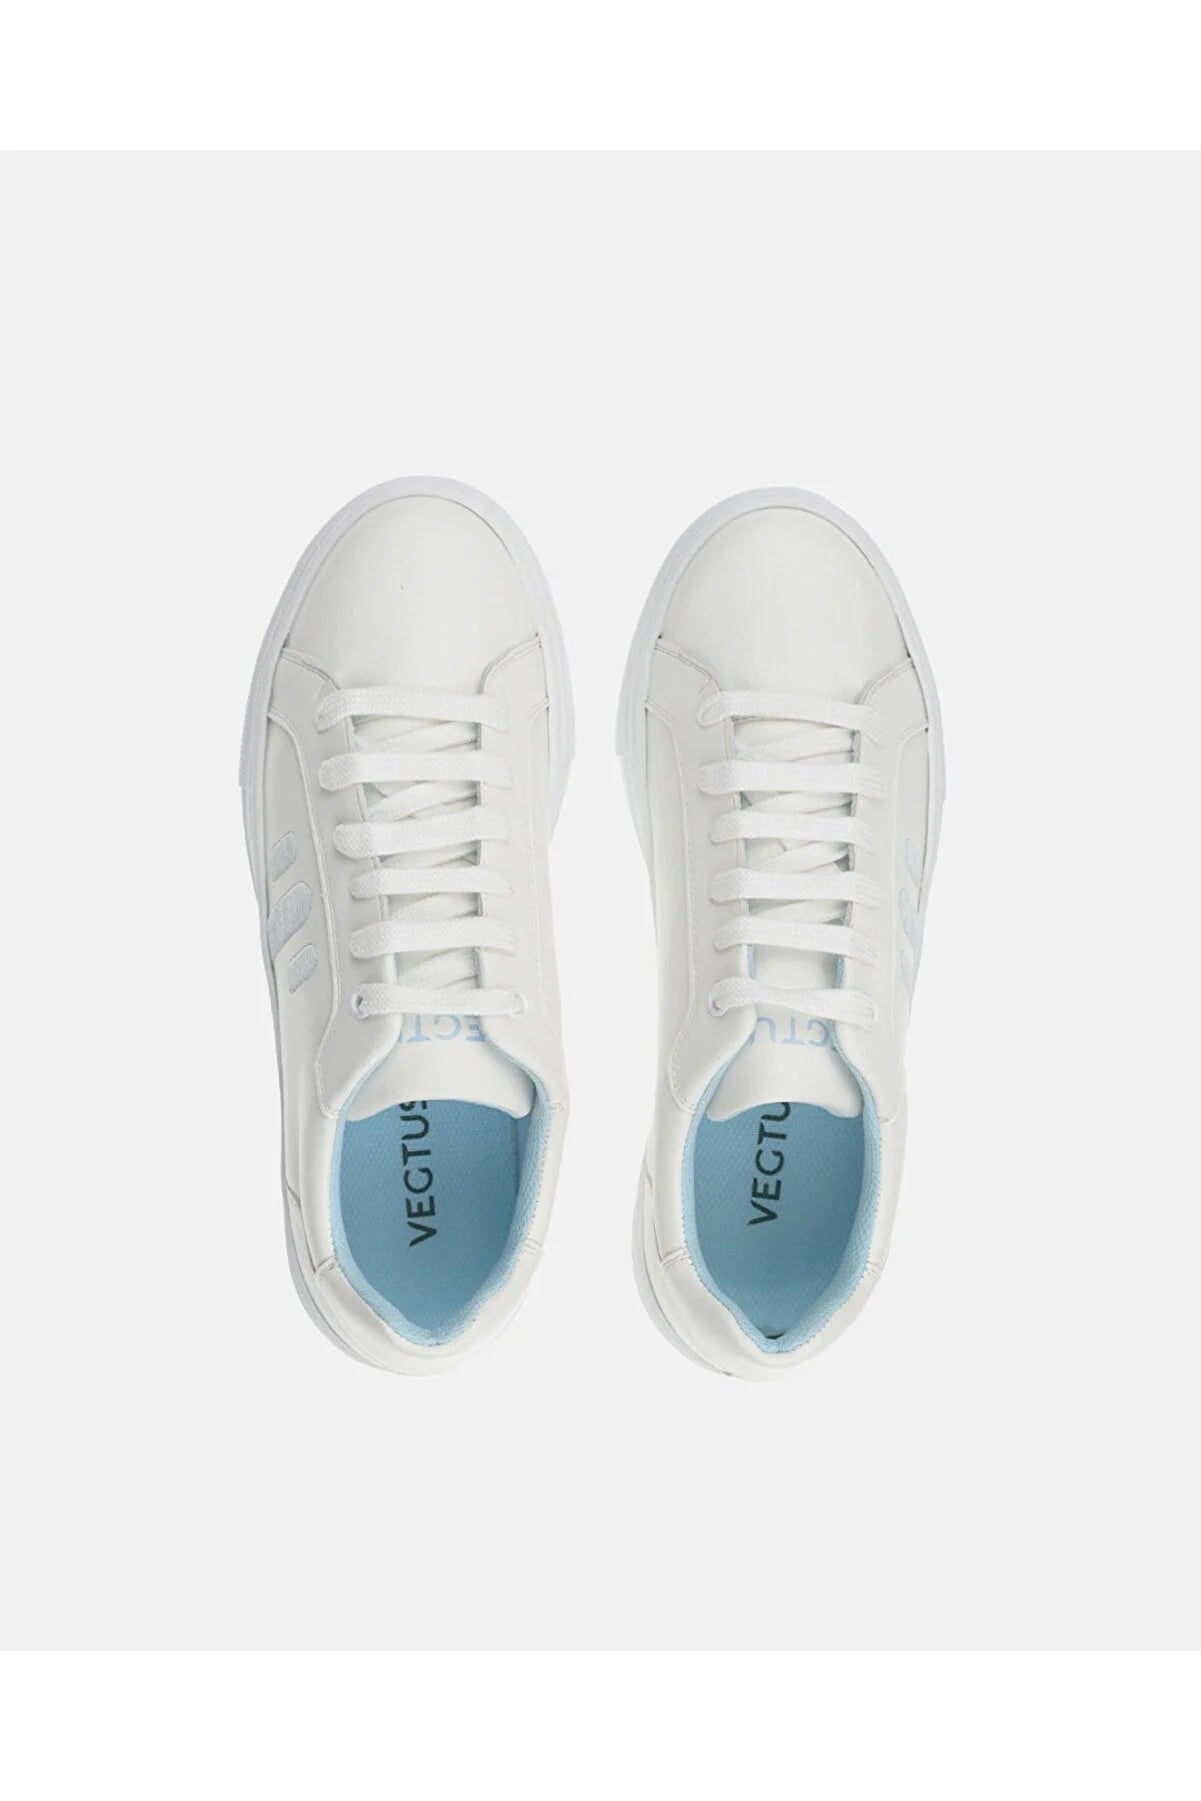 Vegtus Takla Kadın Spor Ayakkabı - Beyaz/Mavi